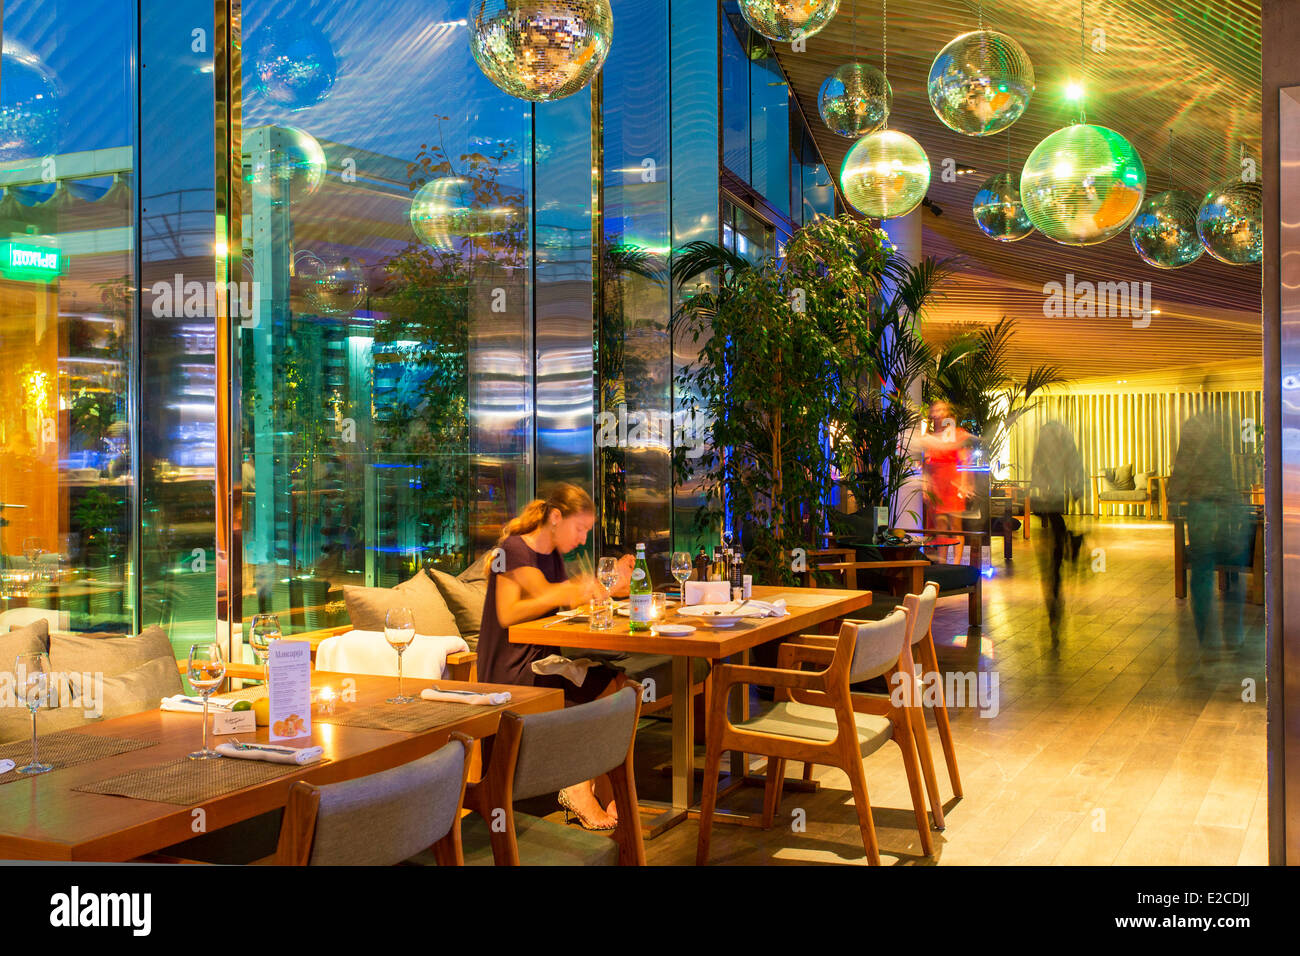 Russland, St. Petersburg, als Weltkulturerbe der UNESCO, der Mansarda Restaurant aufgeführt Stockfoto